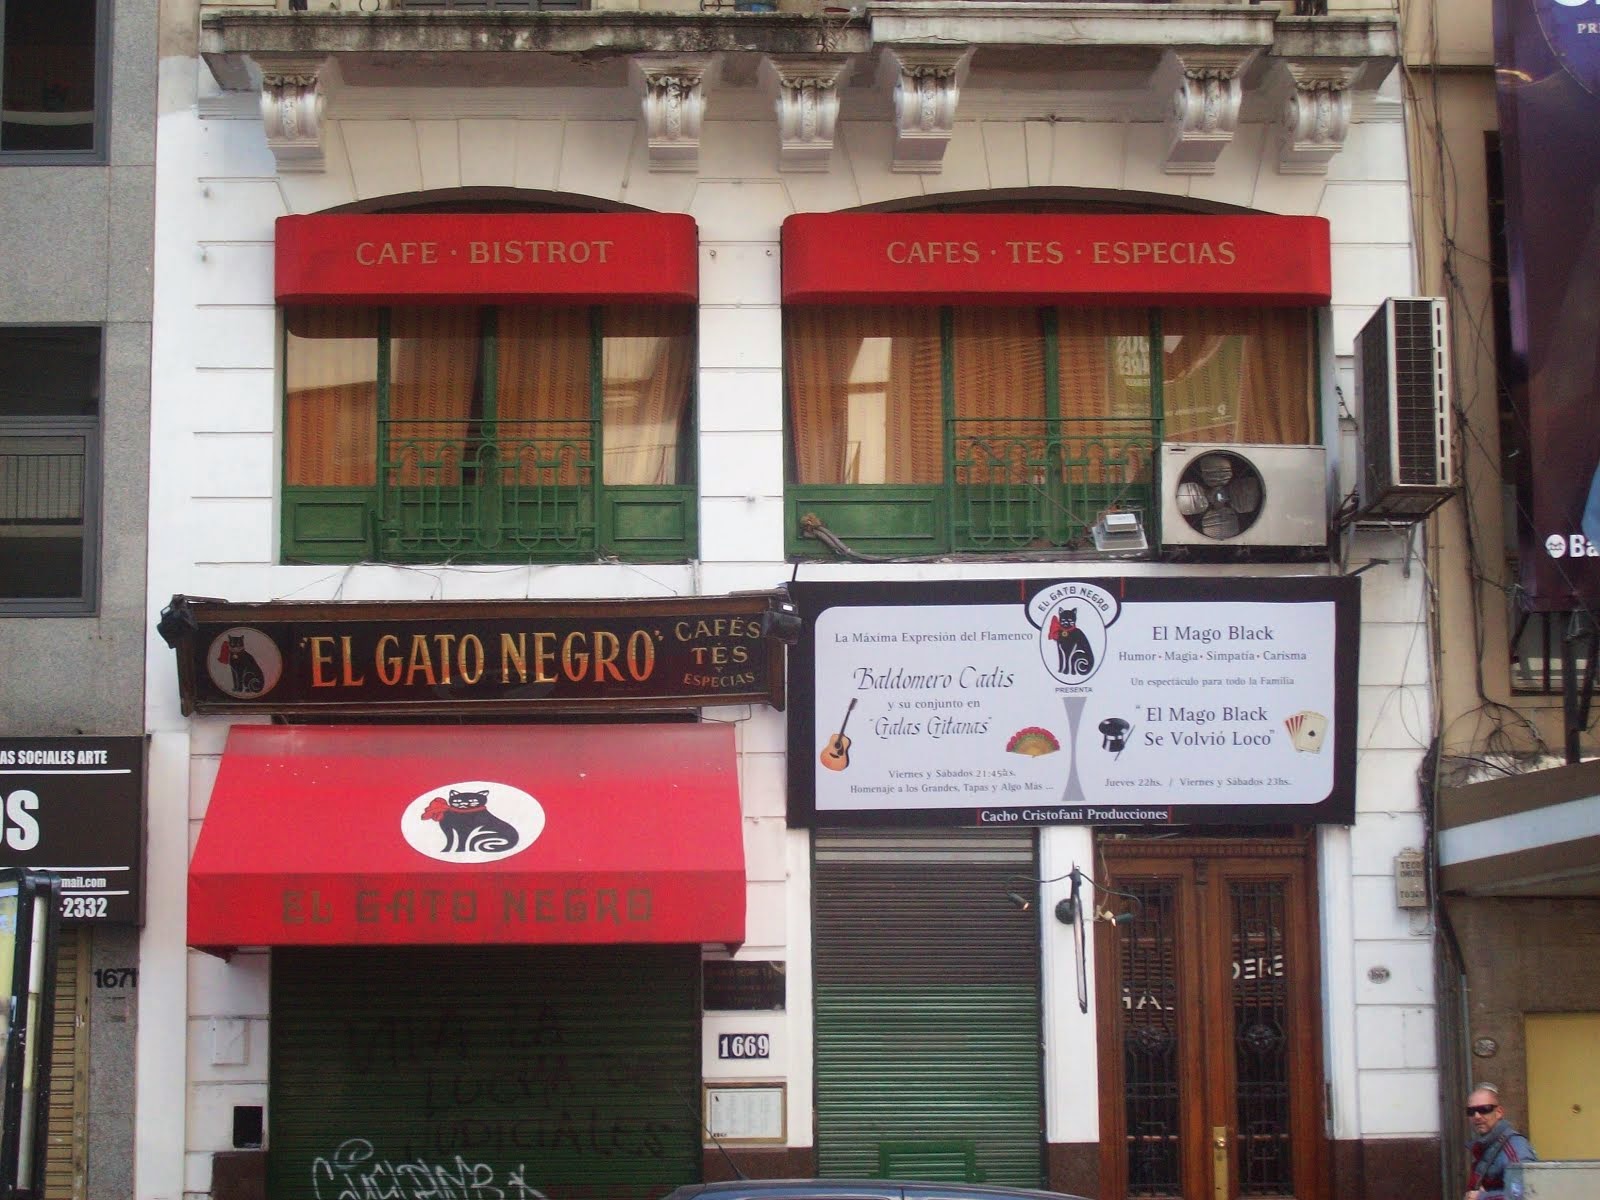 Café "El Gato Negro"